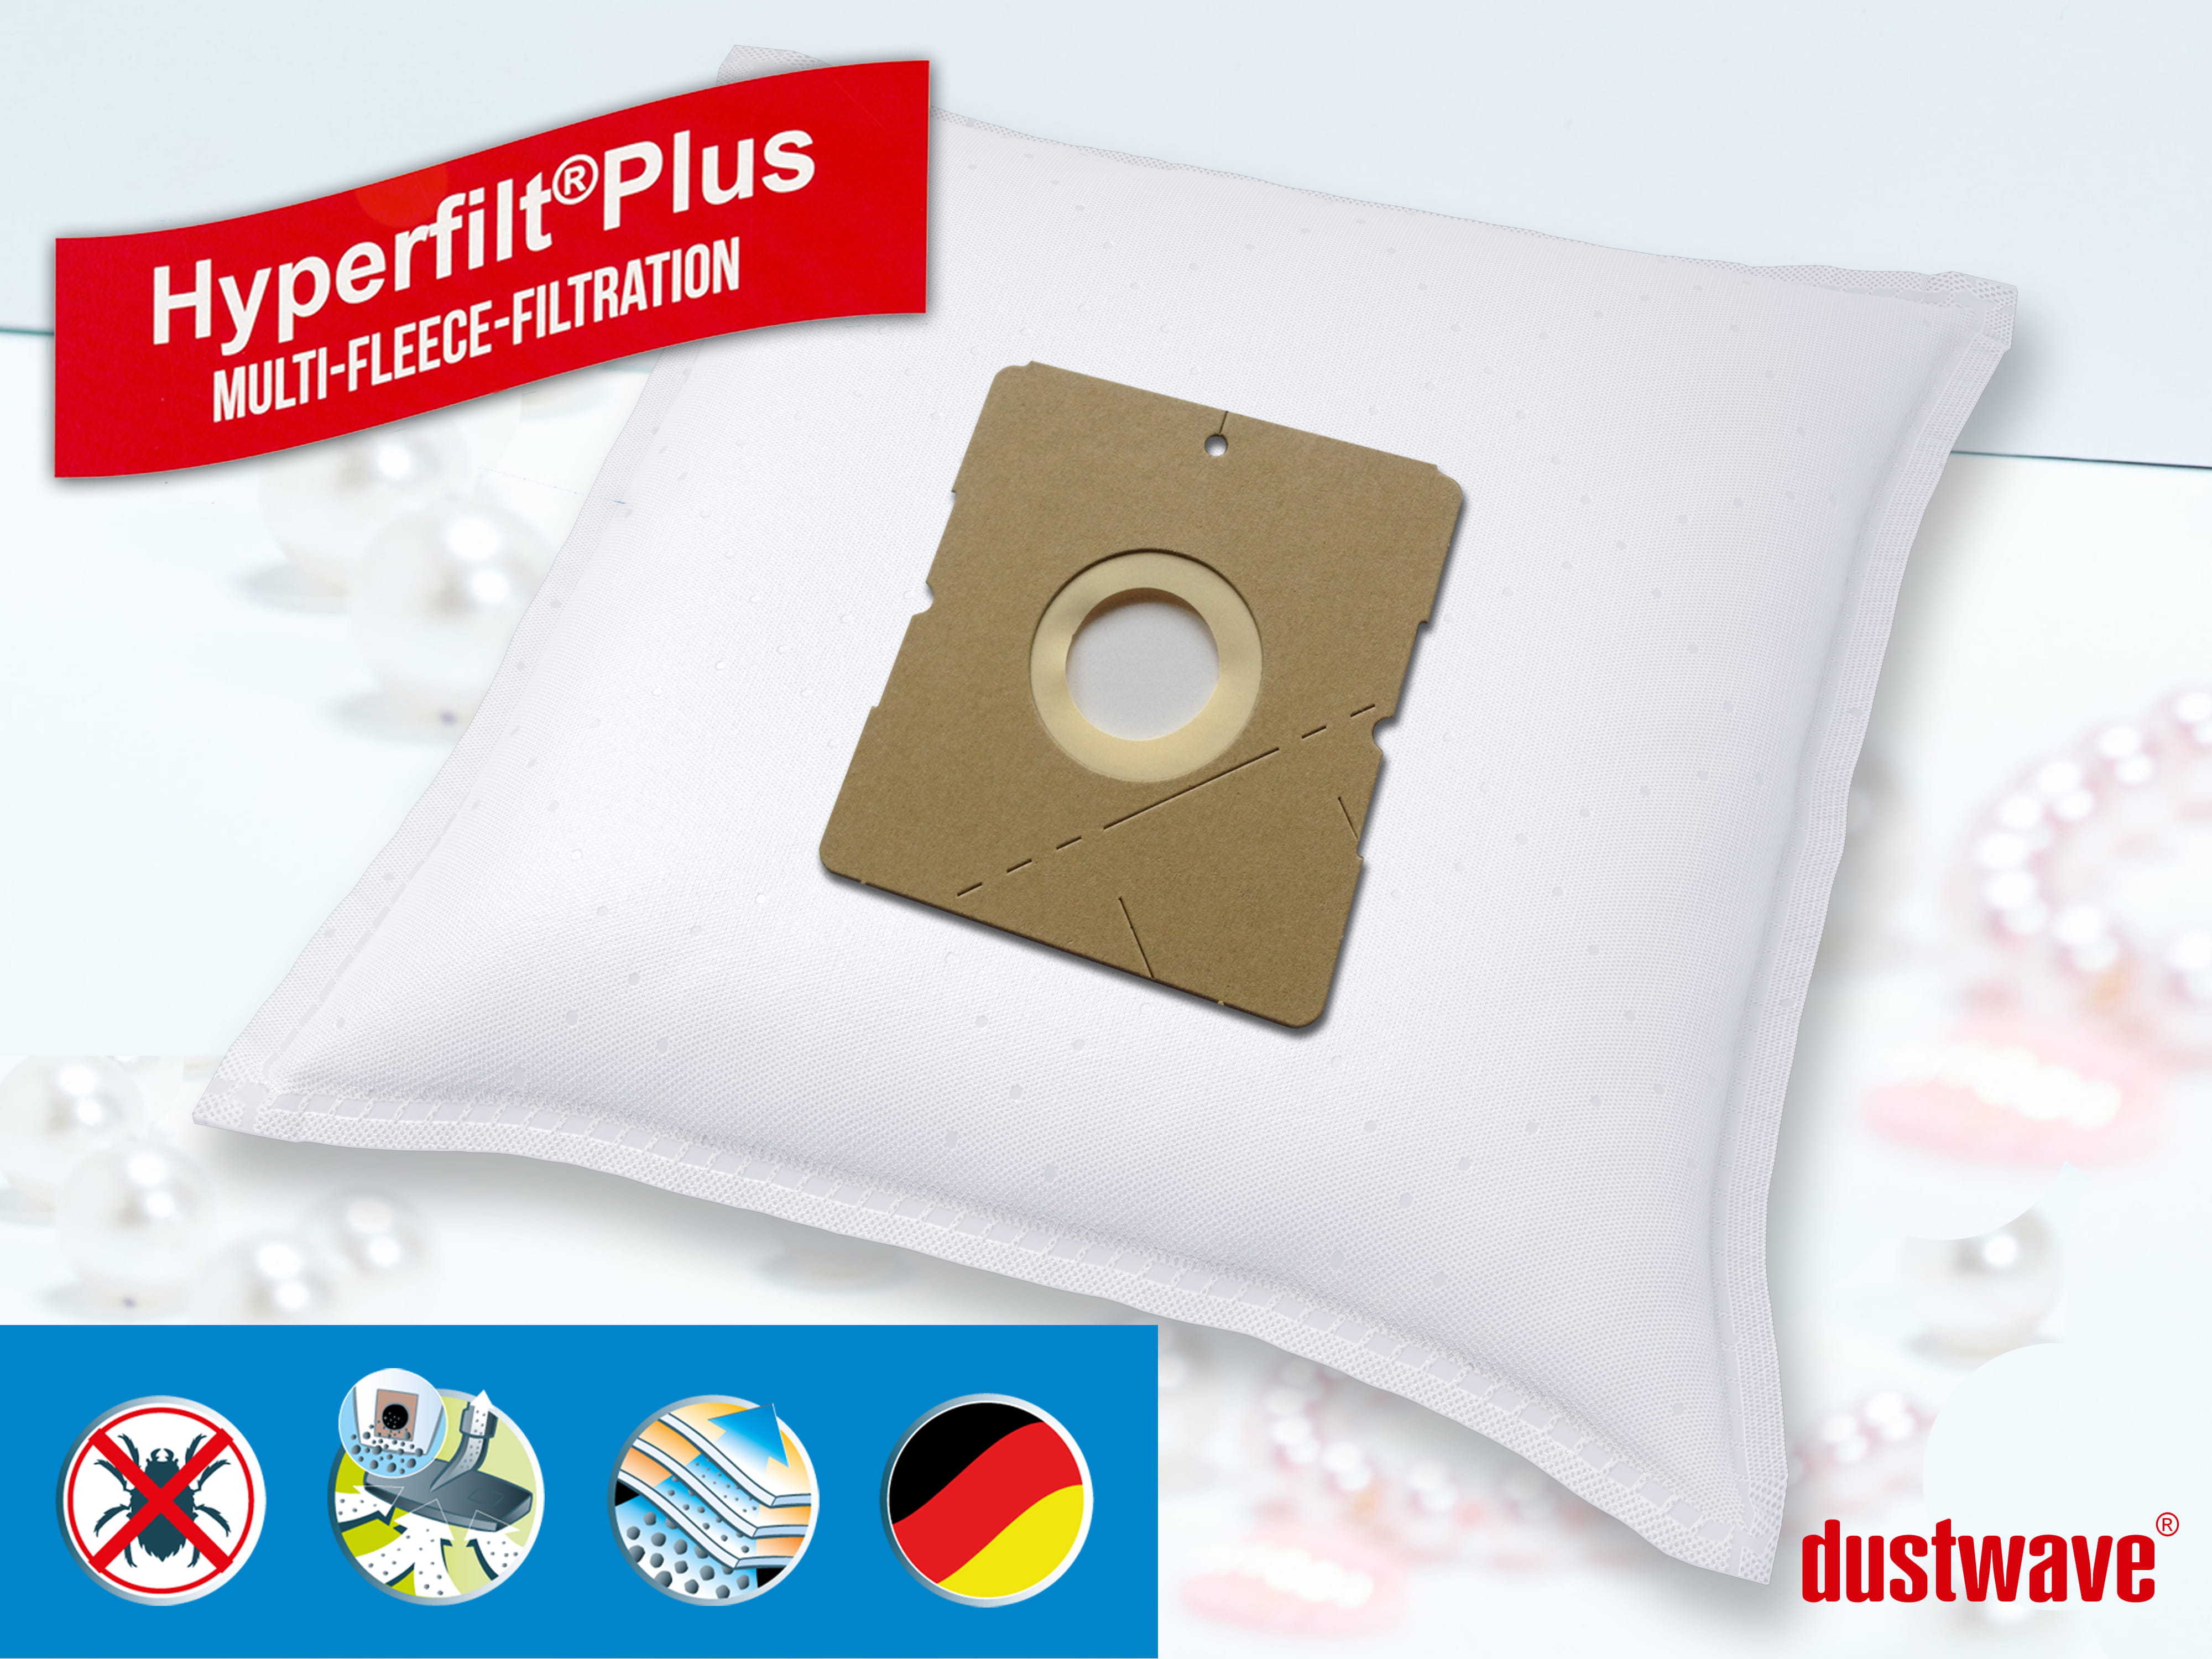 Dustwave® 10 Staubsaugerbeutel für Hoover TWDH1400 - hocheffizient, mehrlagiges Mikrovlies mit Hygieneverschluss - Made in Germany